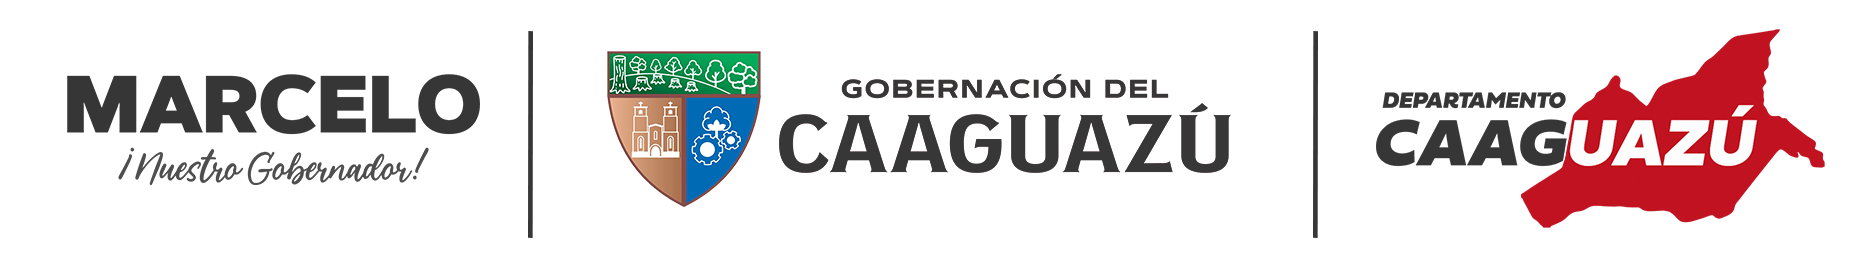 Logo de la Gobernación del Caaguazu